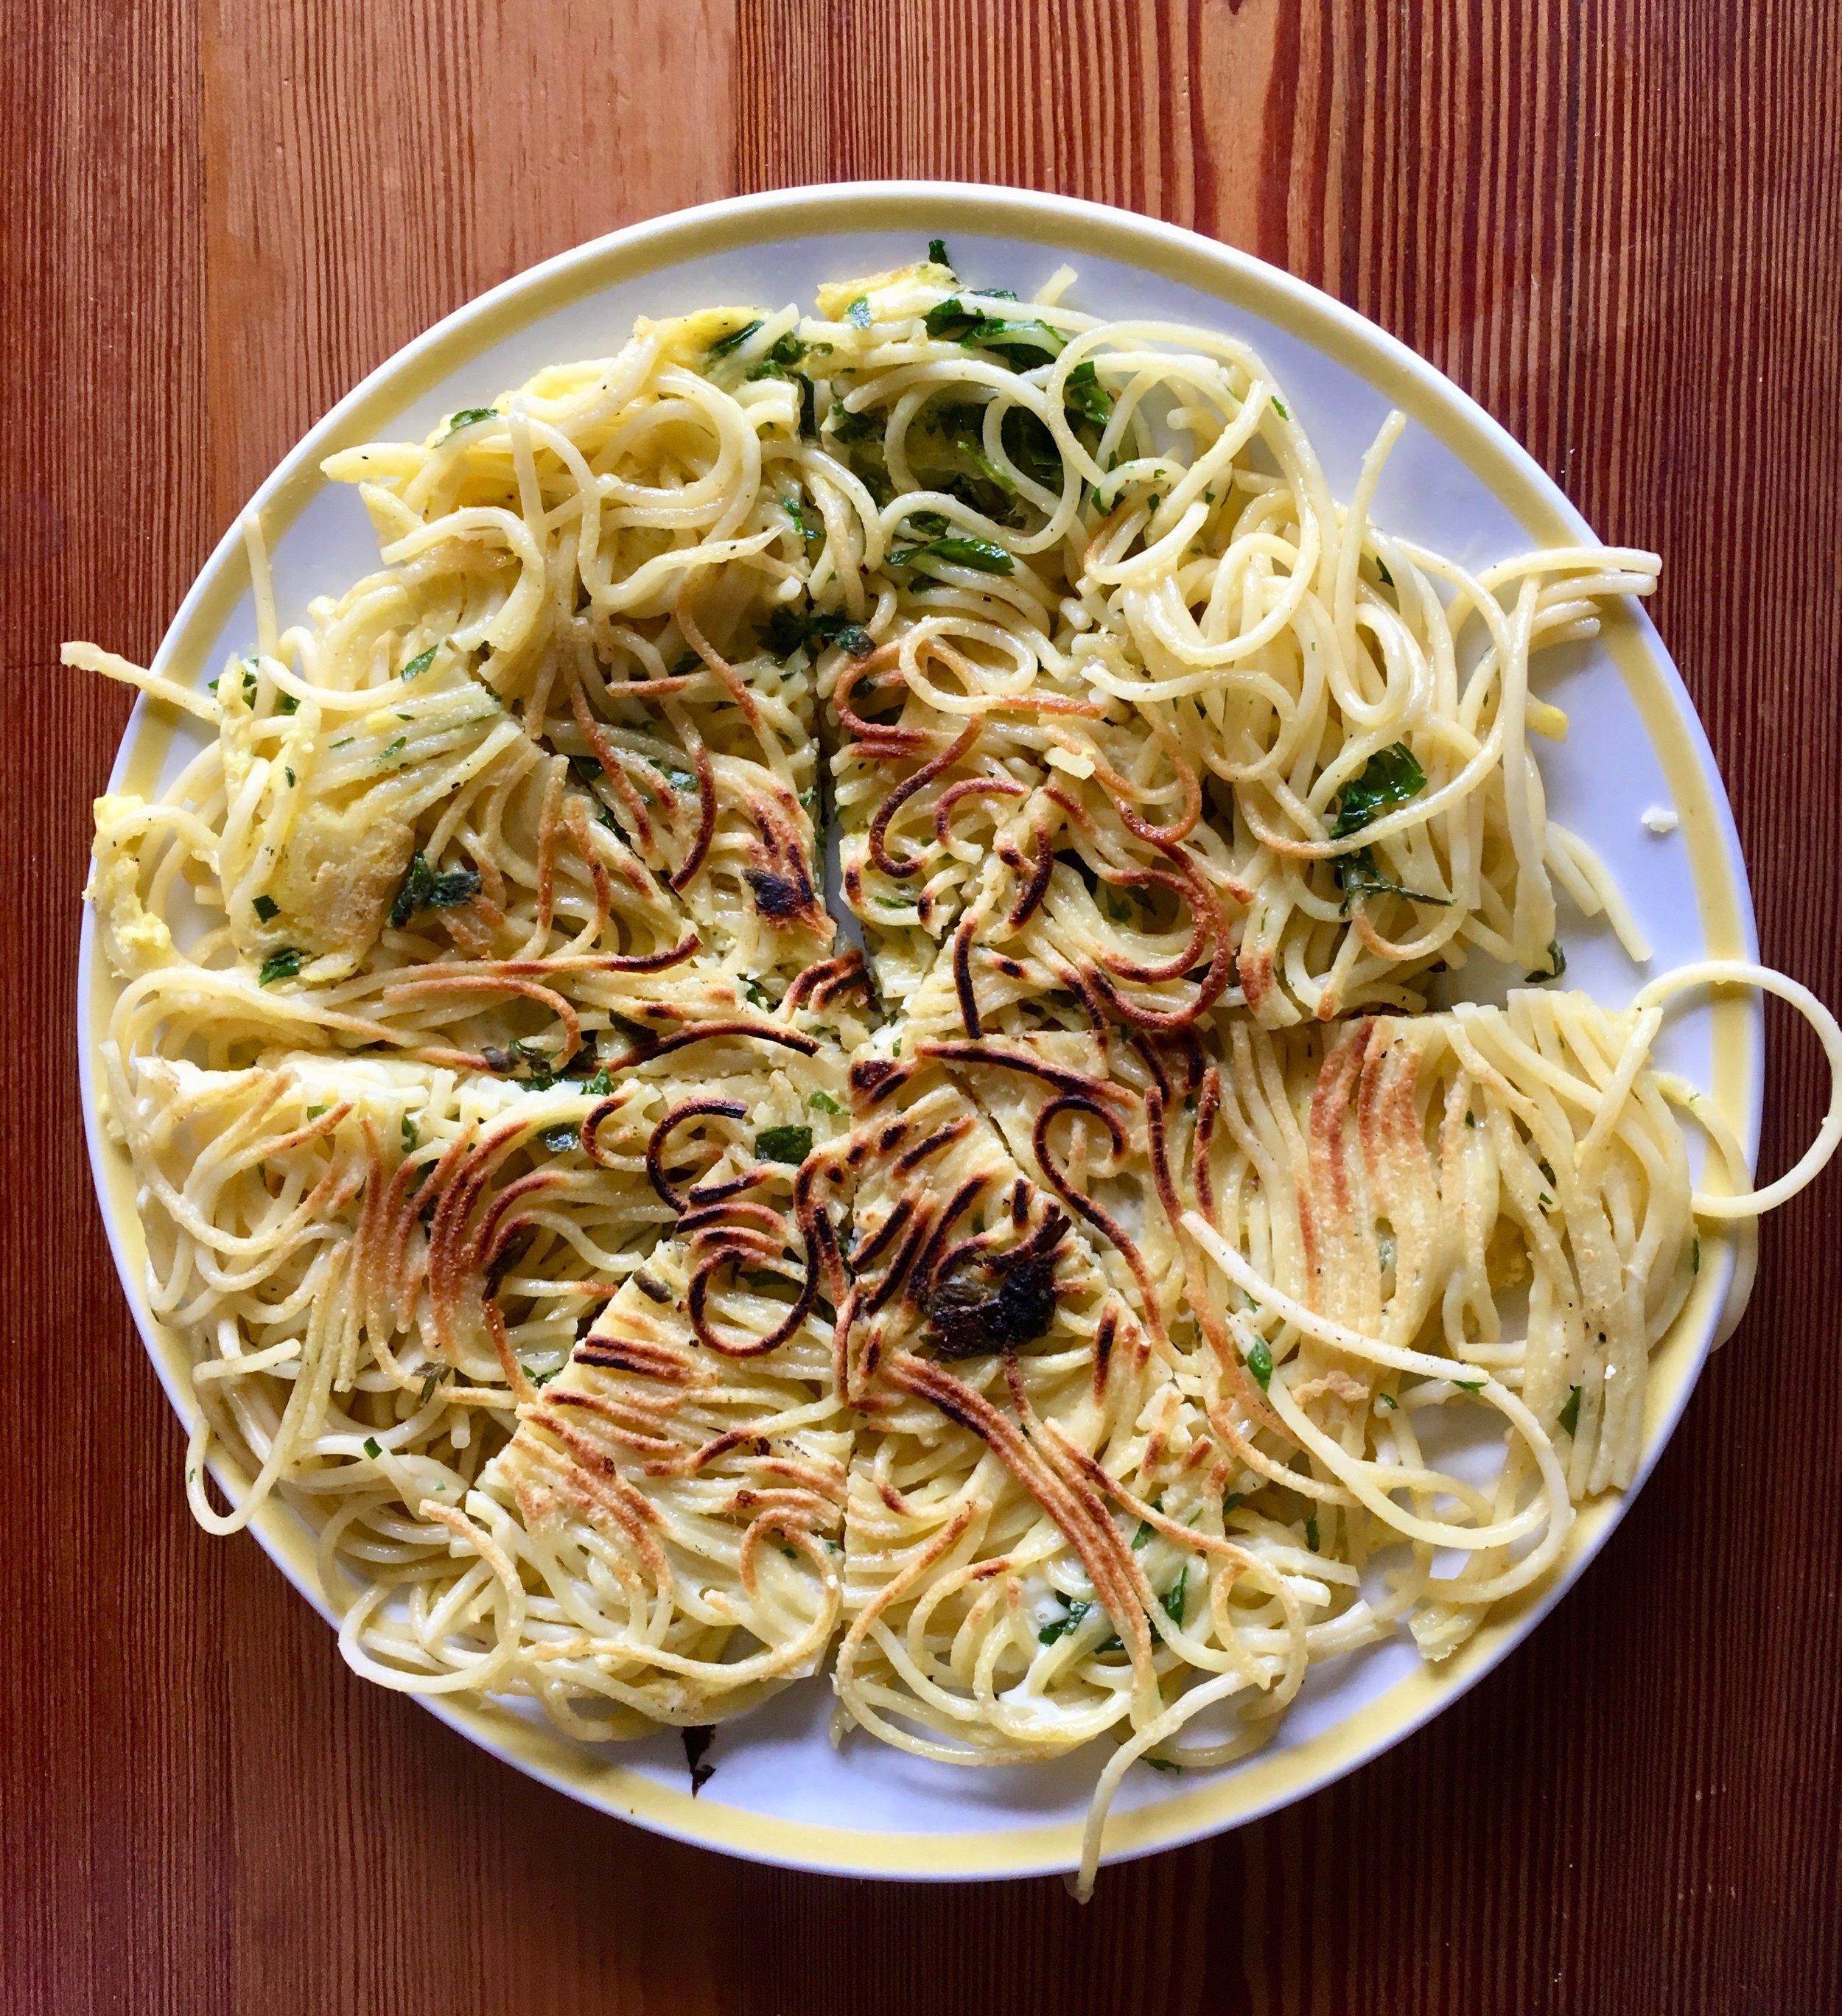 Spaghetti frittata, picnic/potluck staple